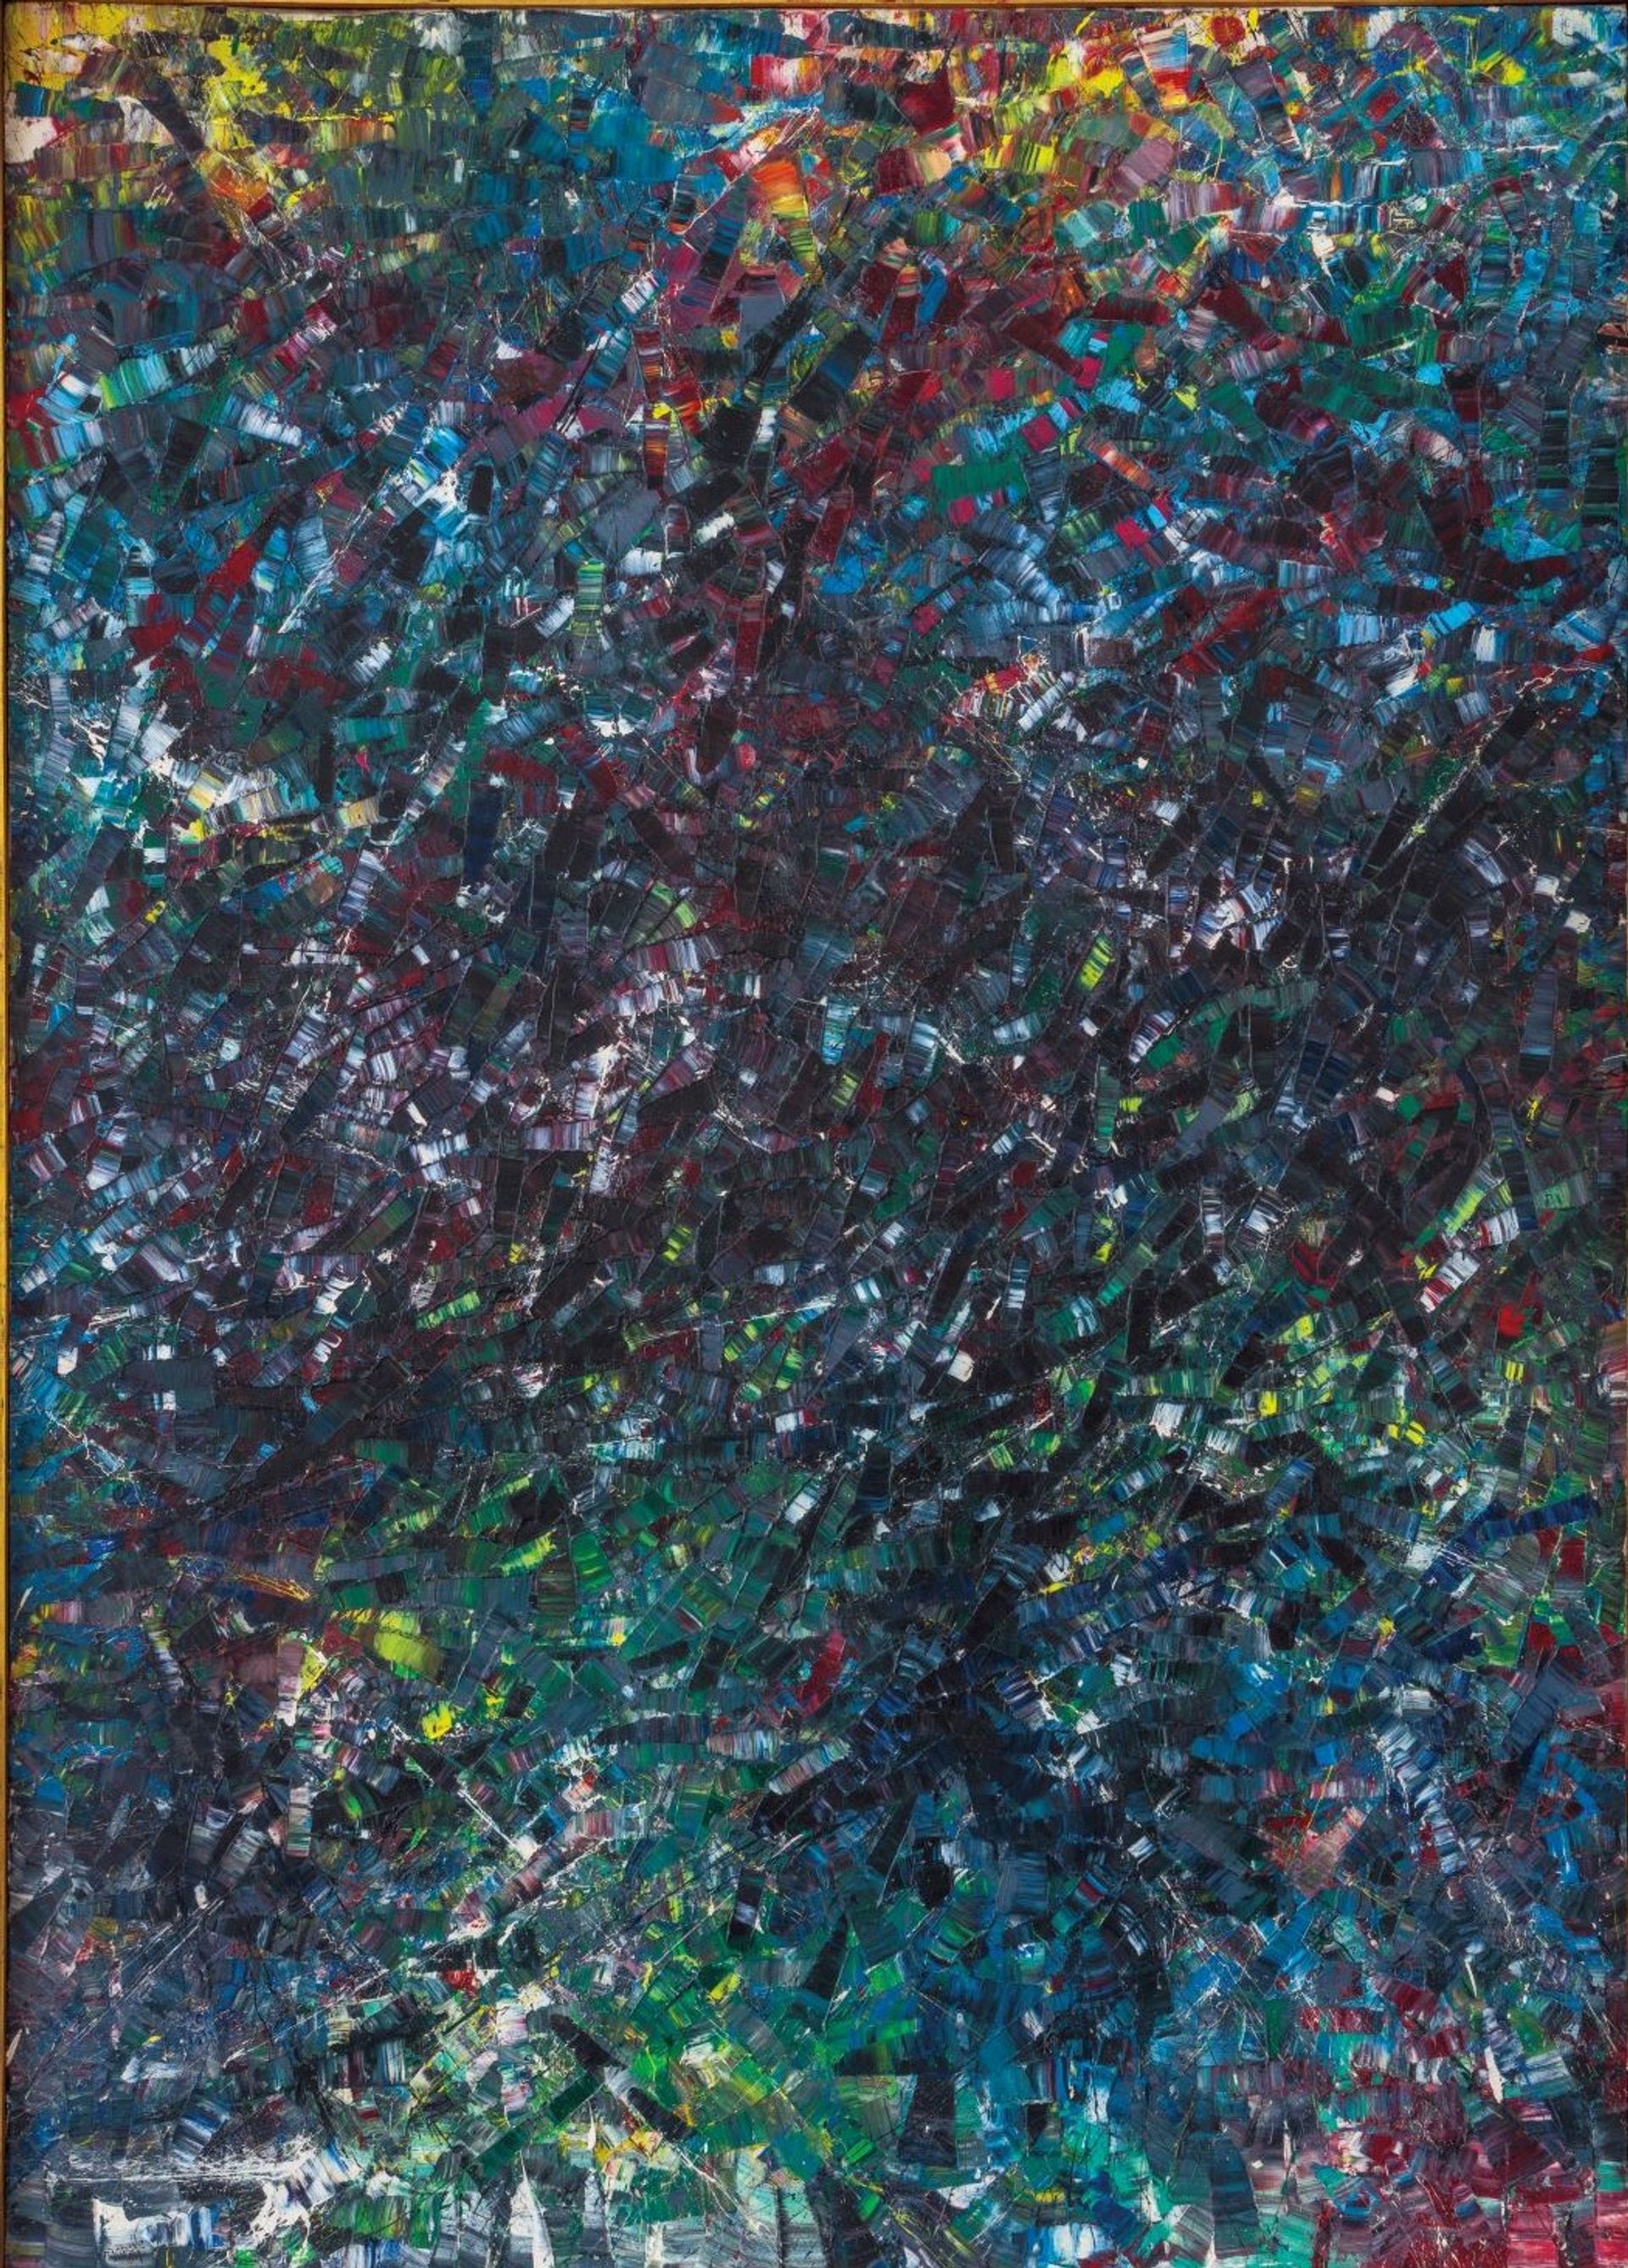 Jean-Paul Riopelle, La Sombreuse, 1954, huile sur toile. Est. 2,5-4 millions d’euros. © Christie’s